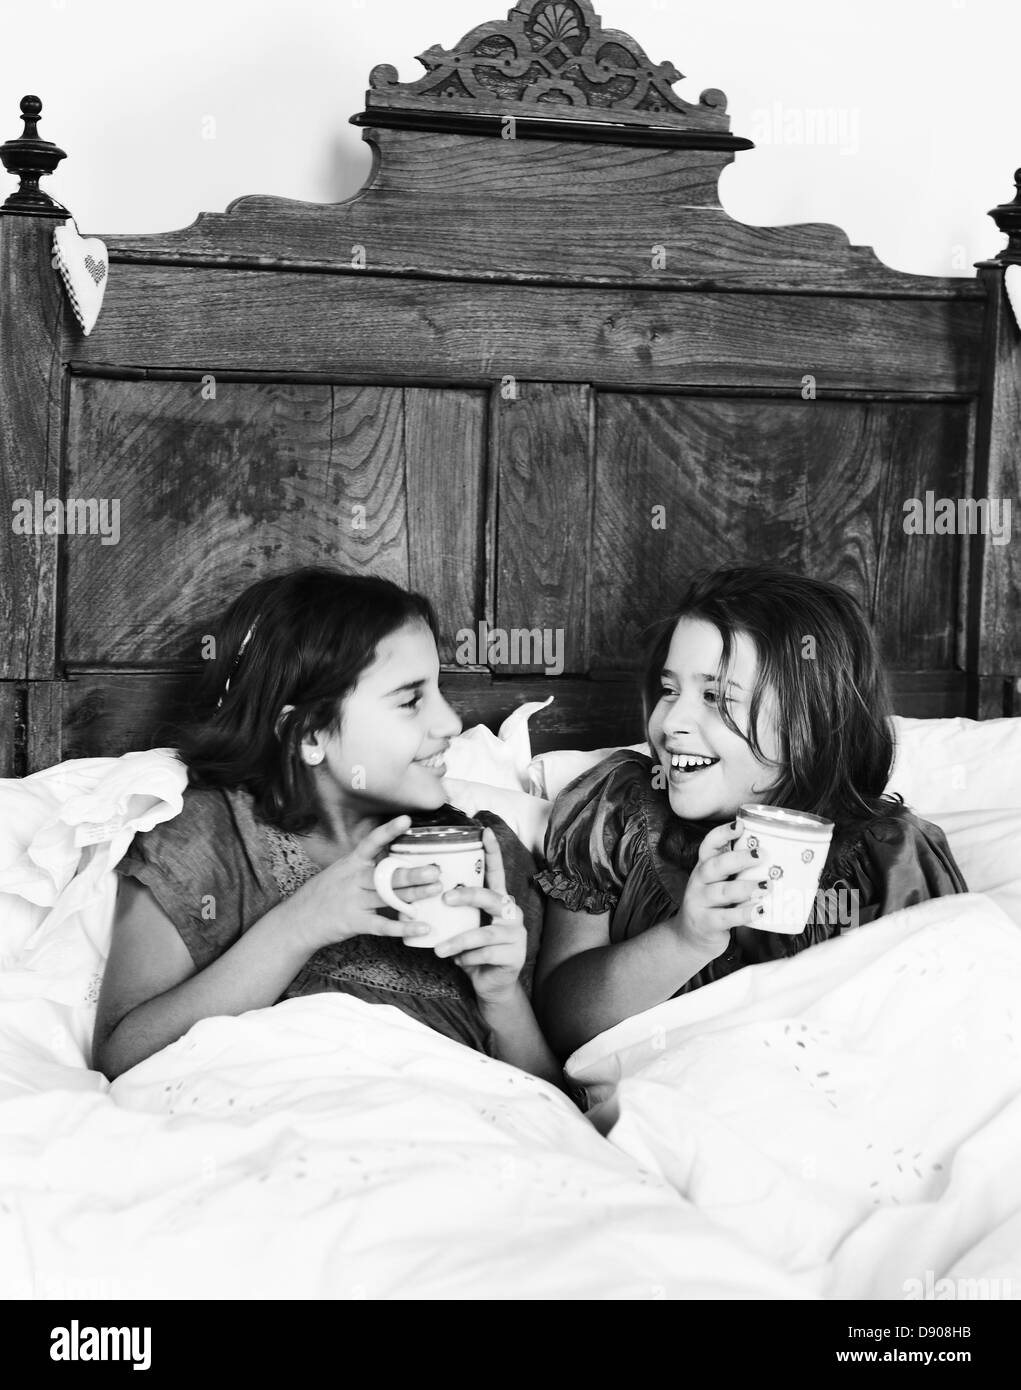 Due ragazze avente una tazza di cioccolata calda in un rustico letto, Italia. Foto Stock